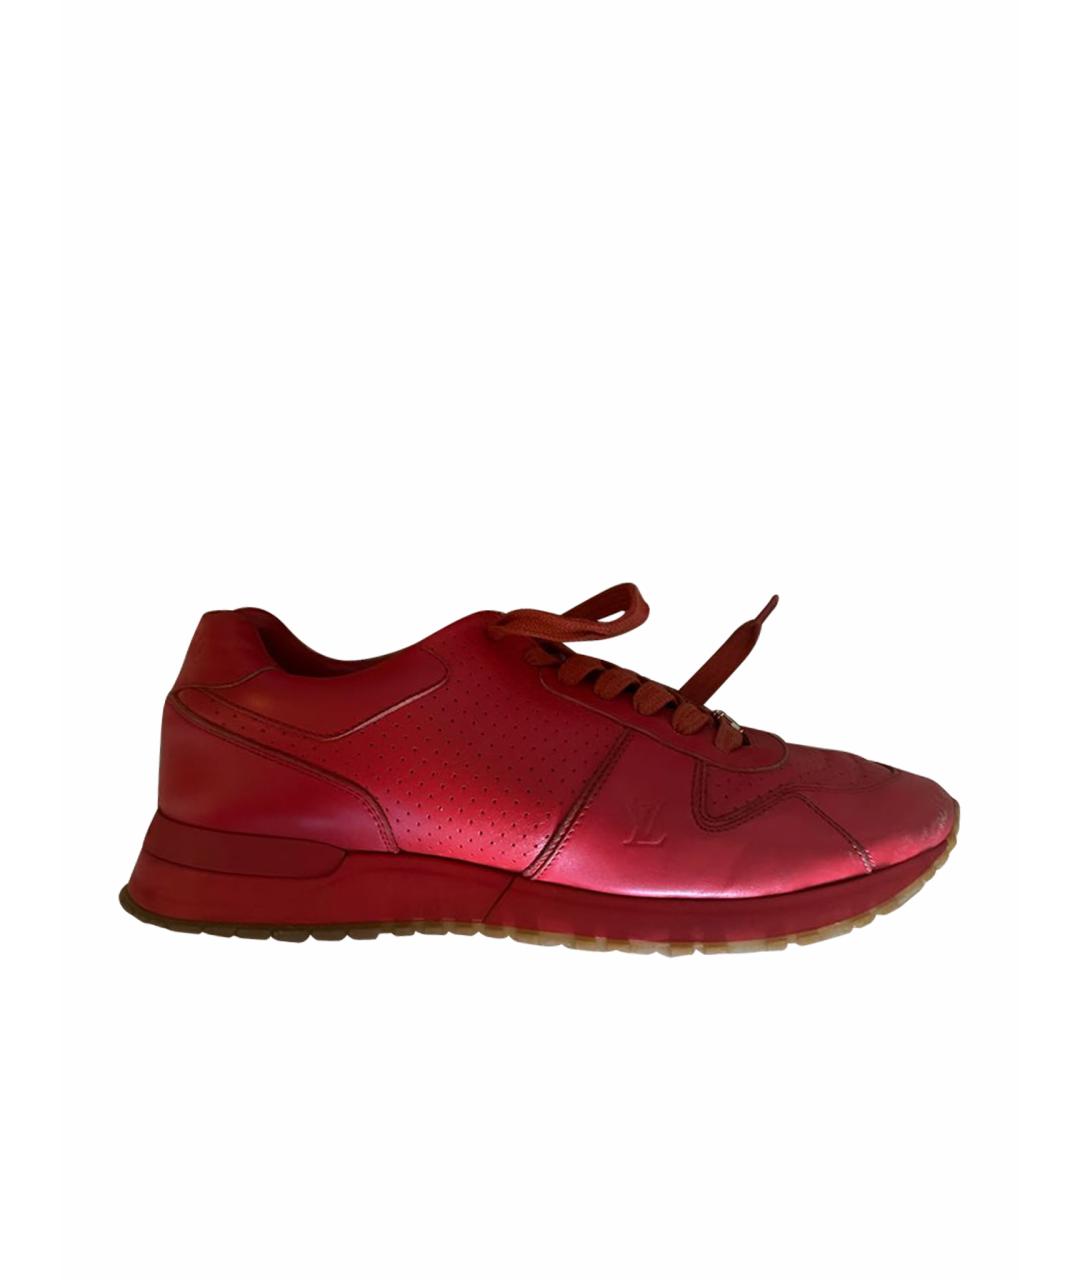 LOUIS VUITTON PRE-OWNED Красные кожаные низкие кроссовки / кеды, фото 1